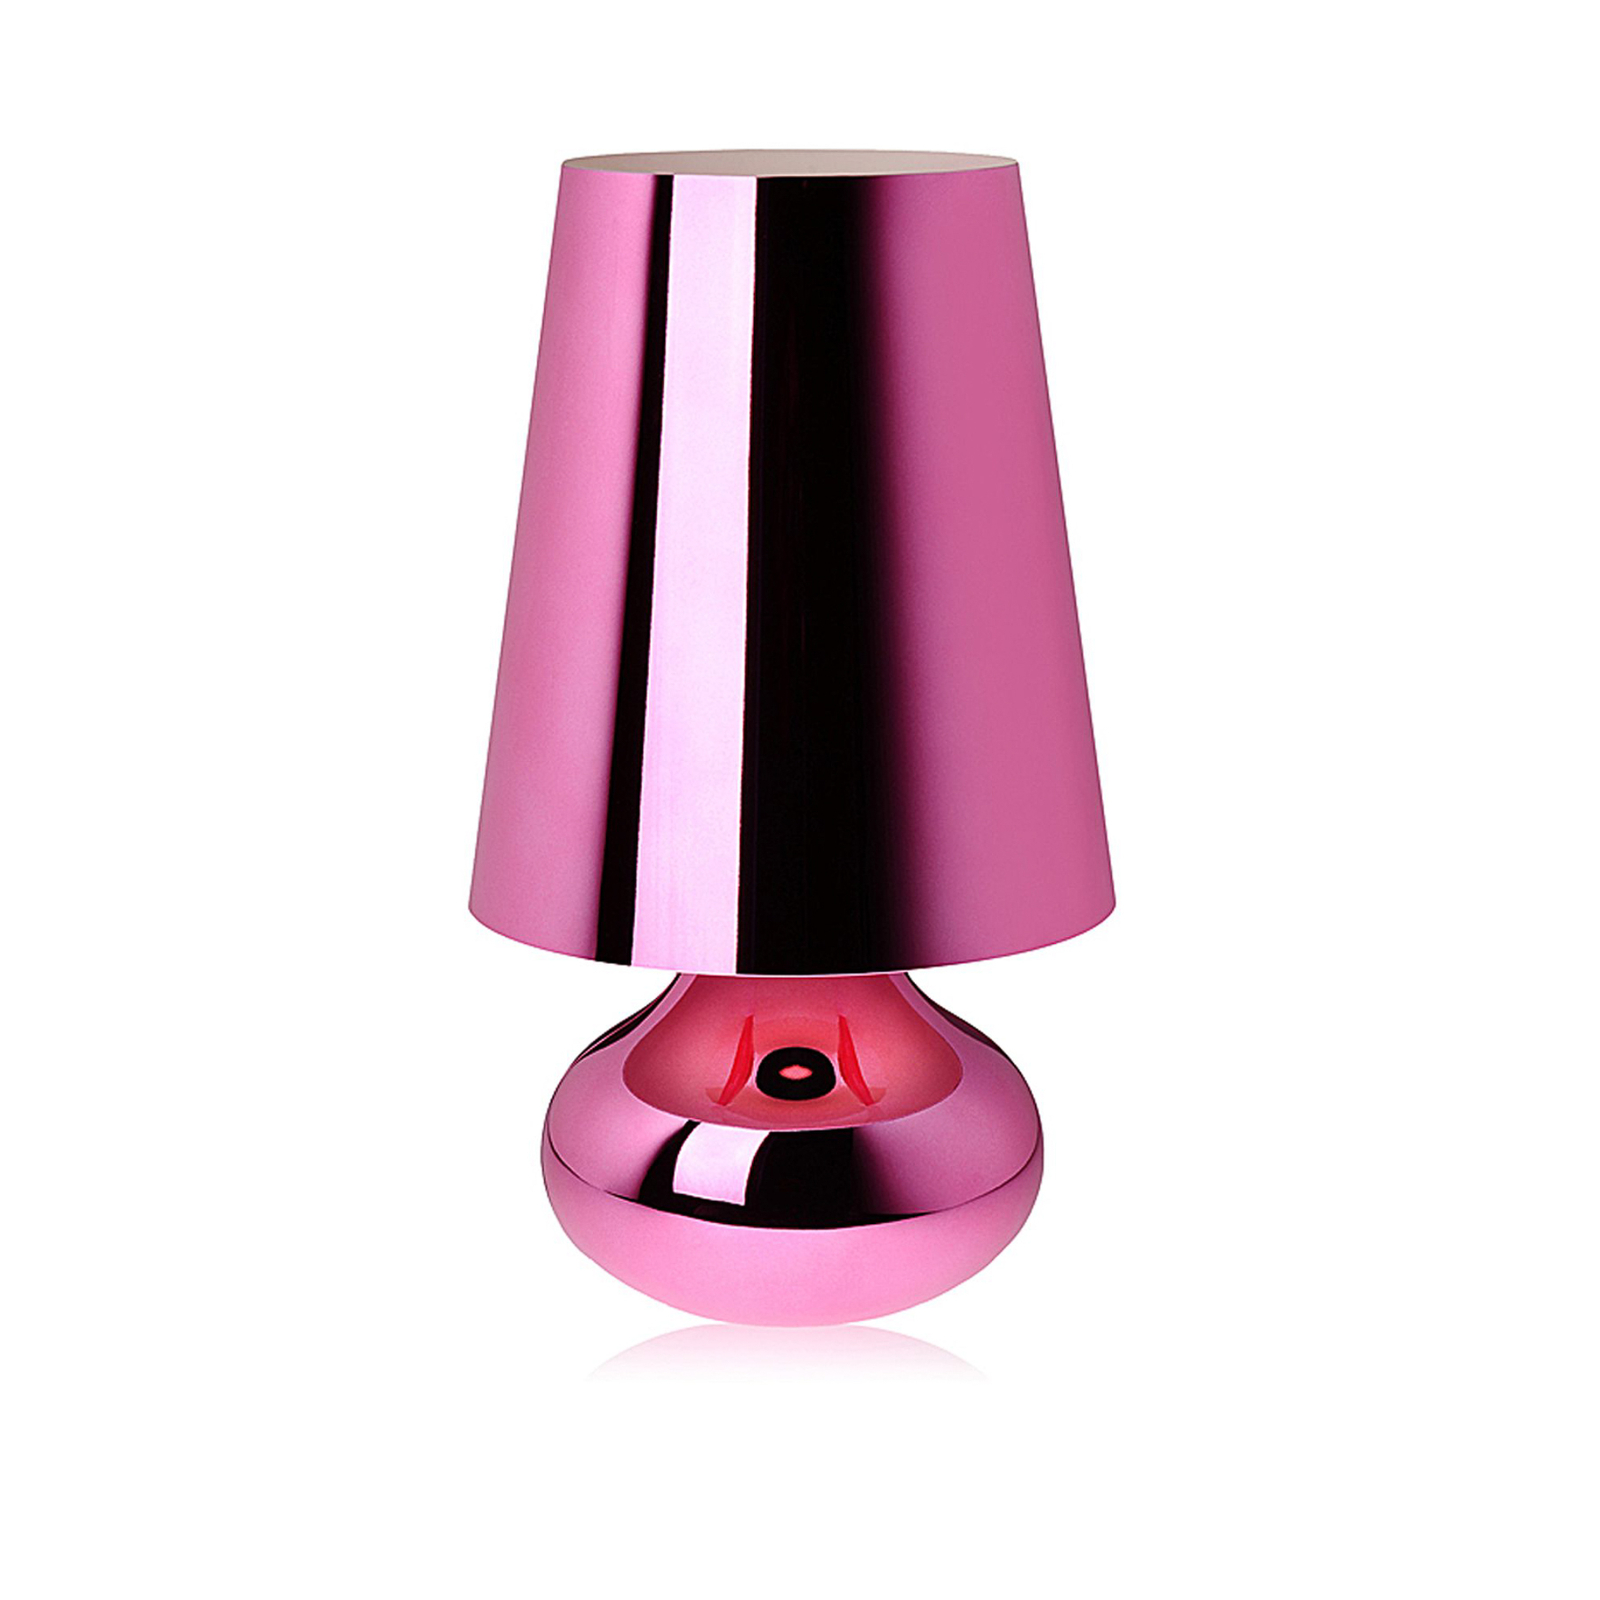 Kartell Cindy stolová LED lampa, ružová metalická